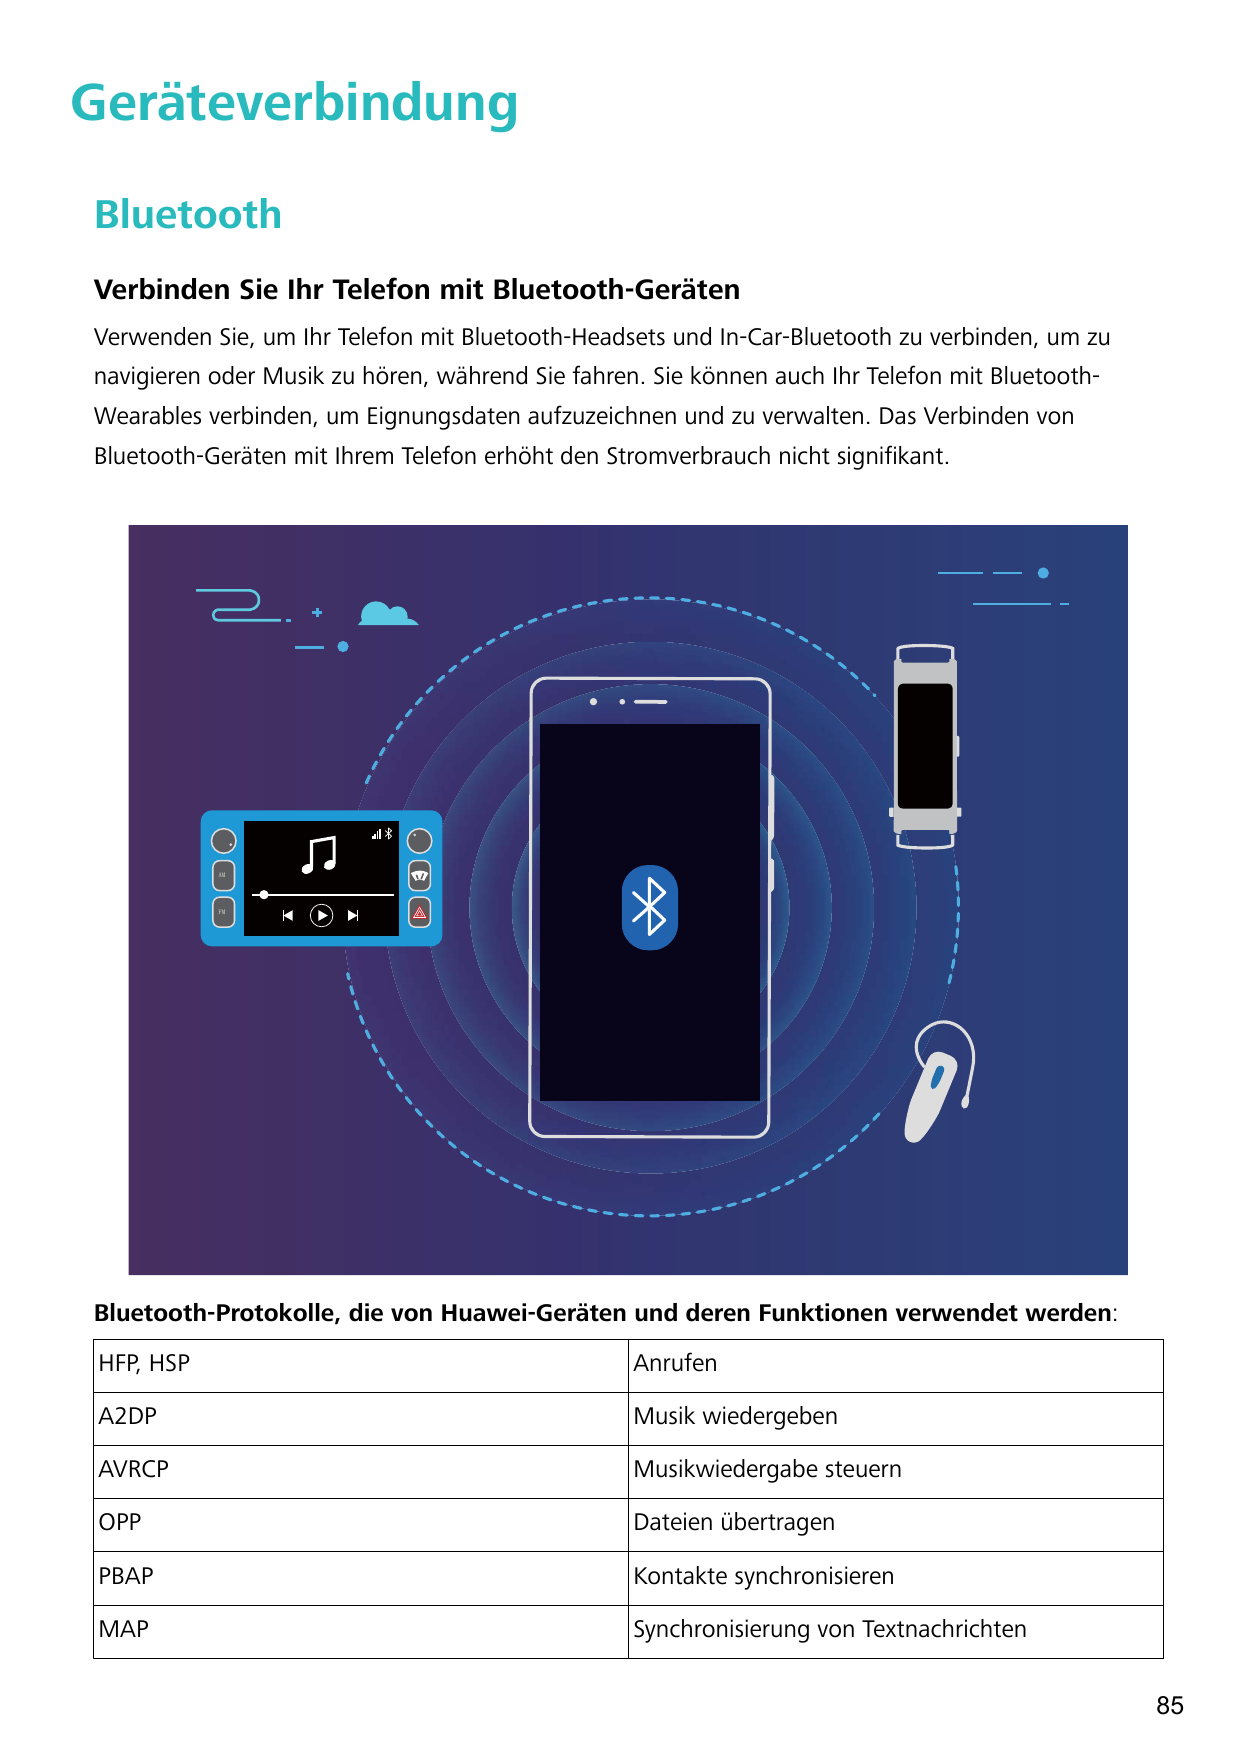 GeräteverbindungBluetoothVerbinden Sie Ihr Telefon mit Bluetooth-GerätenVerwenden Sie, um Ihr Telefon mit Bluetooth-Headsets und